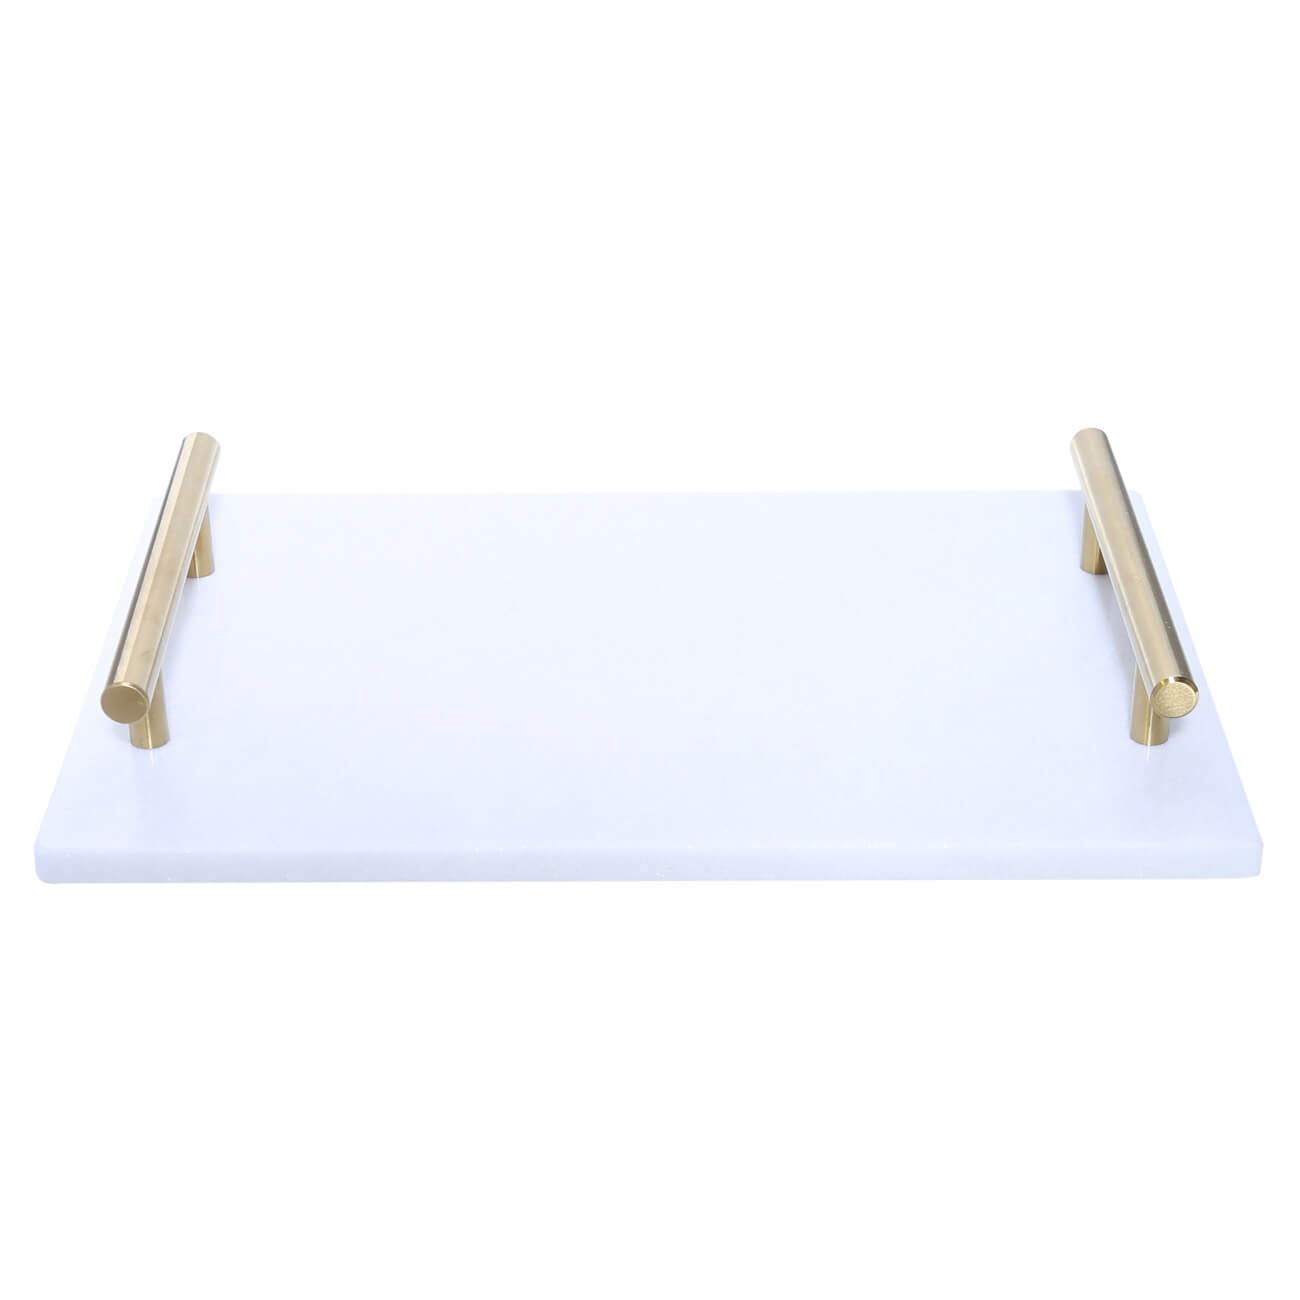 Kuchenland Поднос, 30x20 см, с ручками, мрамор, прямоугольный, белый/золотистый, Marble поднос с ручками